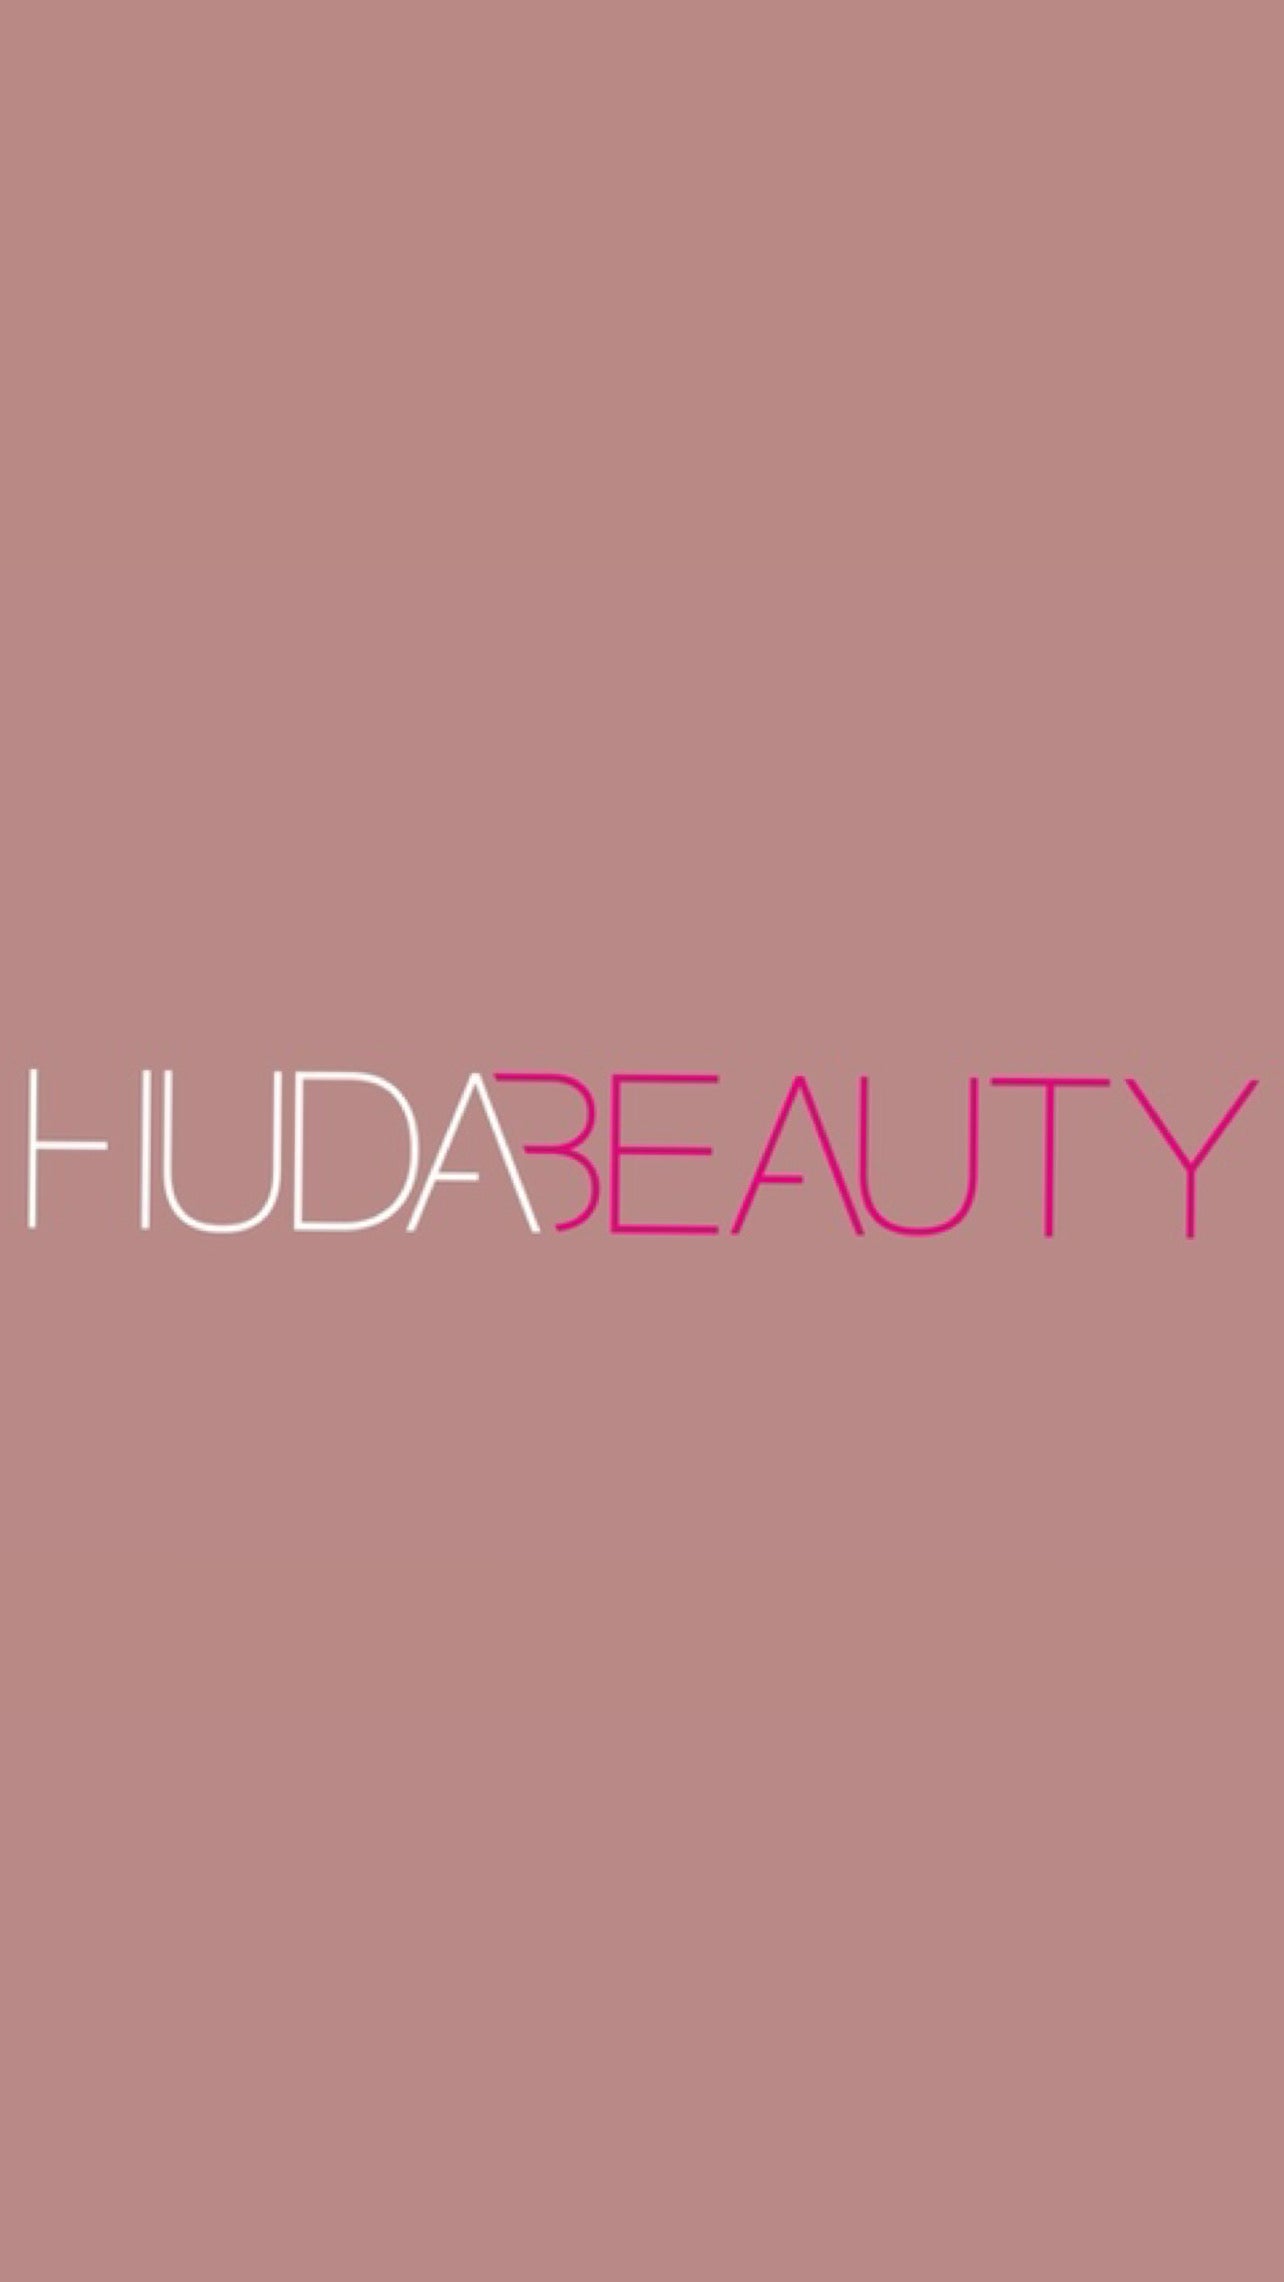 Huda beauty